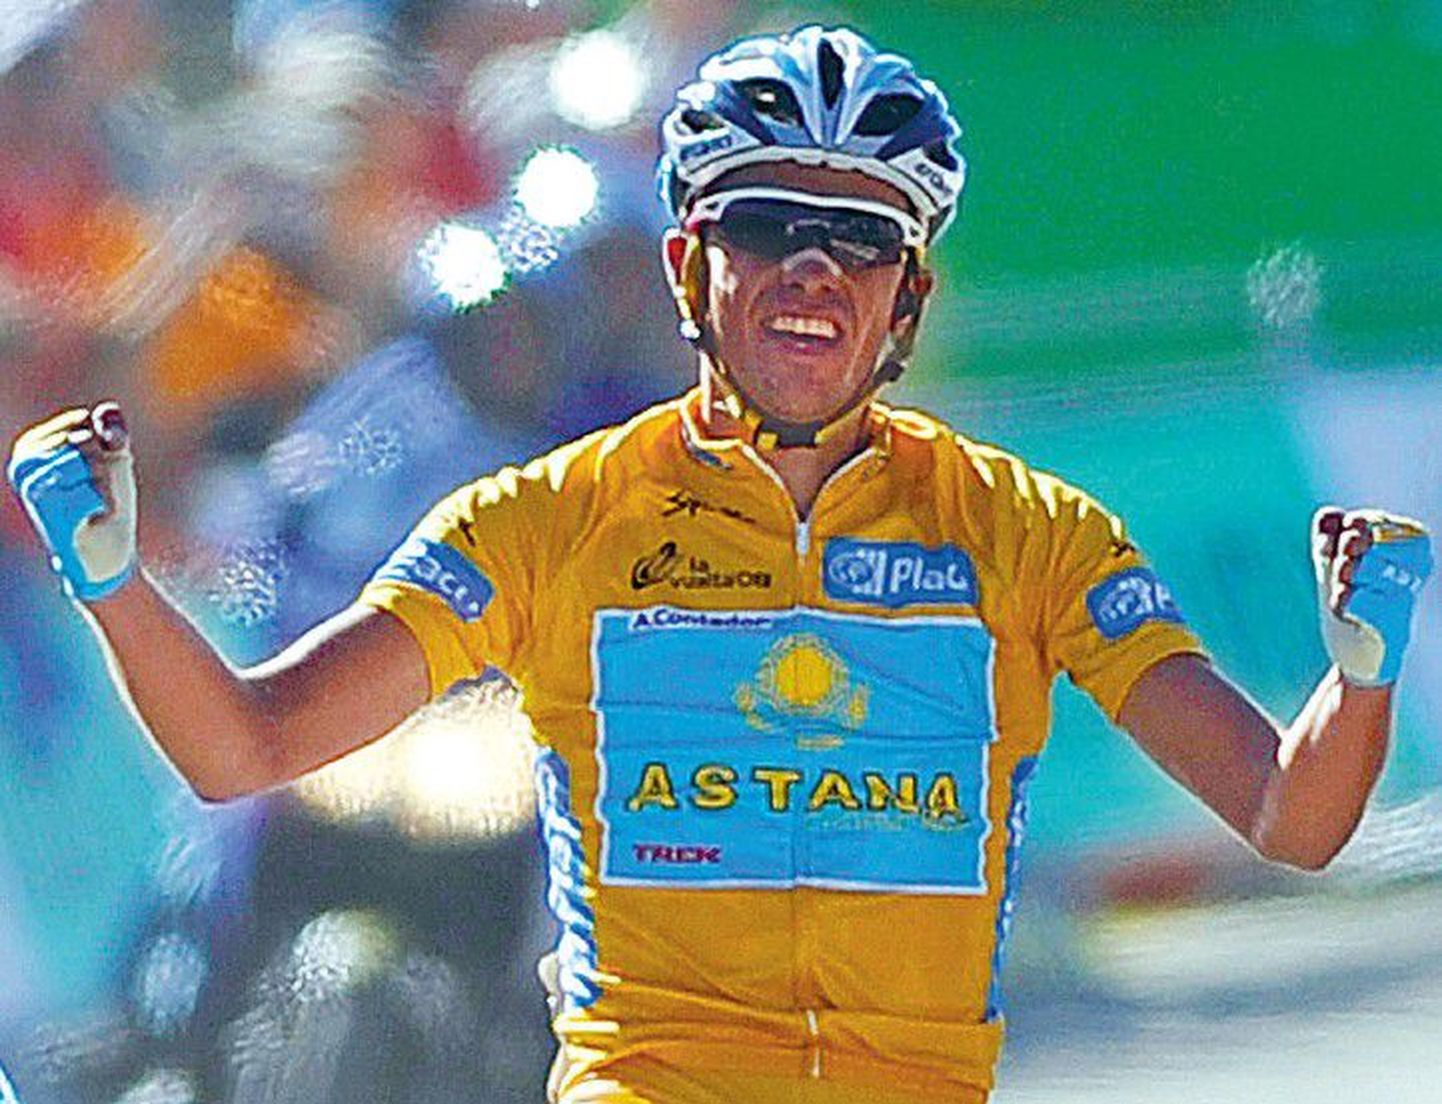 Tänavuse Hispaania Vuelta velotuuri võitnud Alberto Contador tõusis suurmeeste sekka.